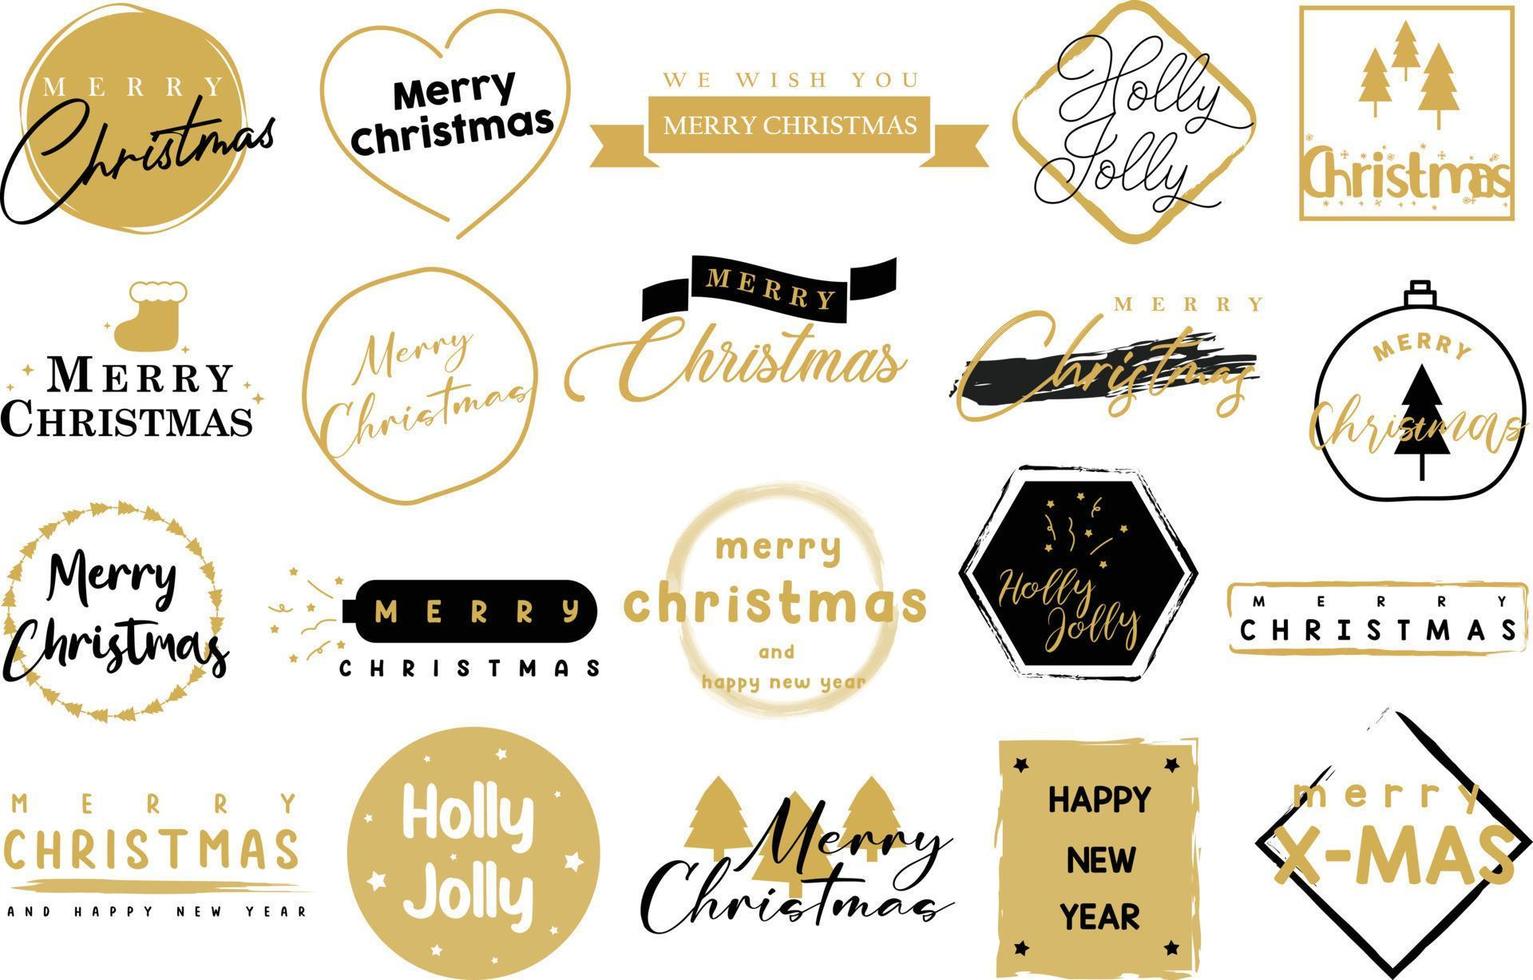 allegro Natale tipografia lettering distintivo, cartolina, invito, saluto carta e regalo. vettore